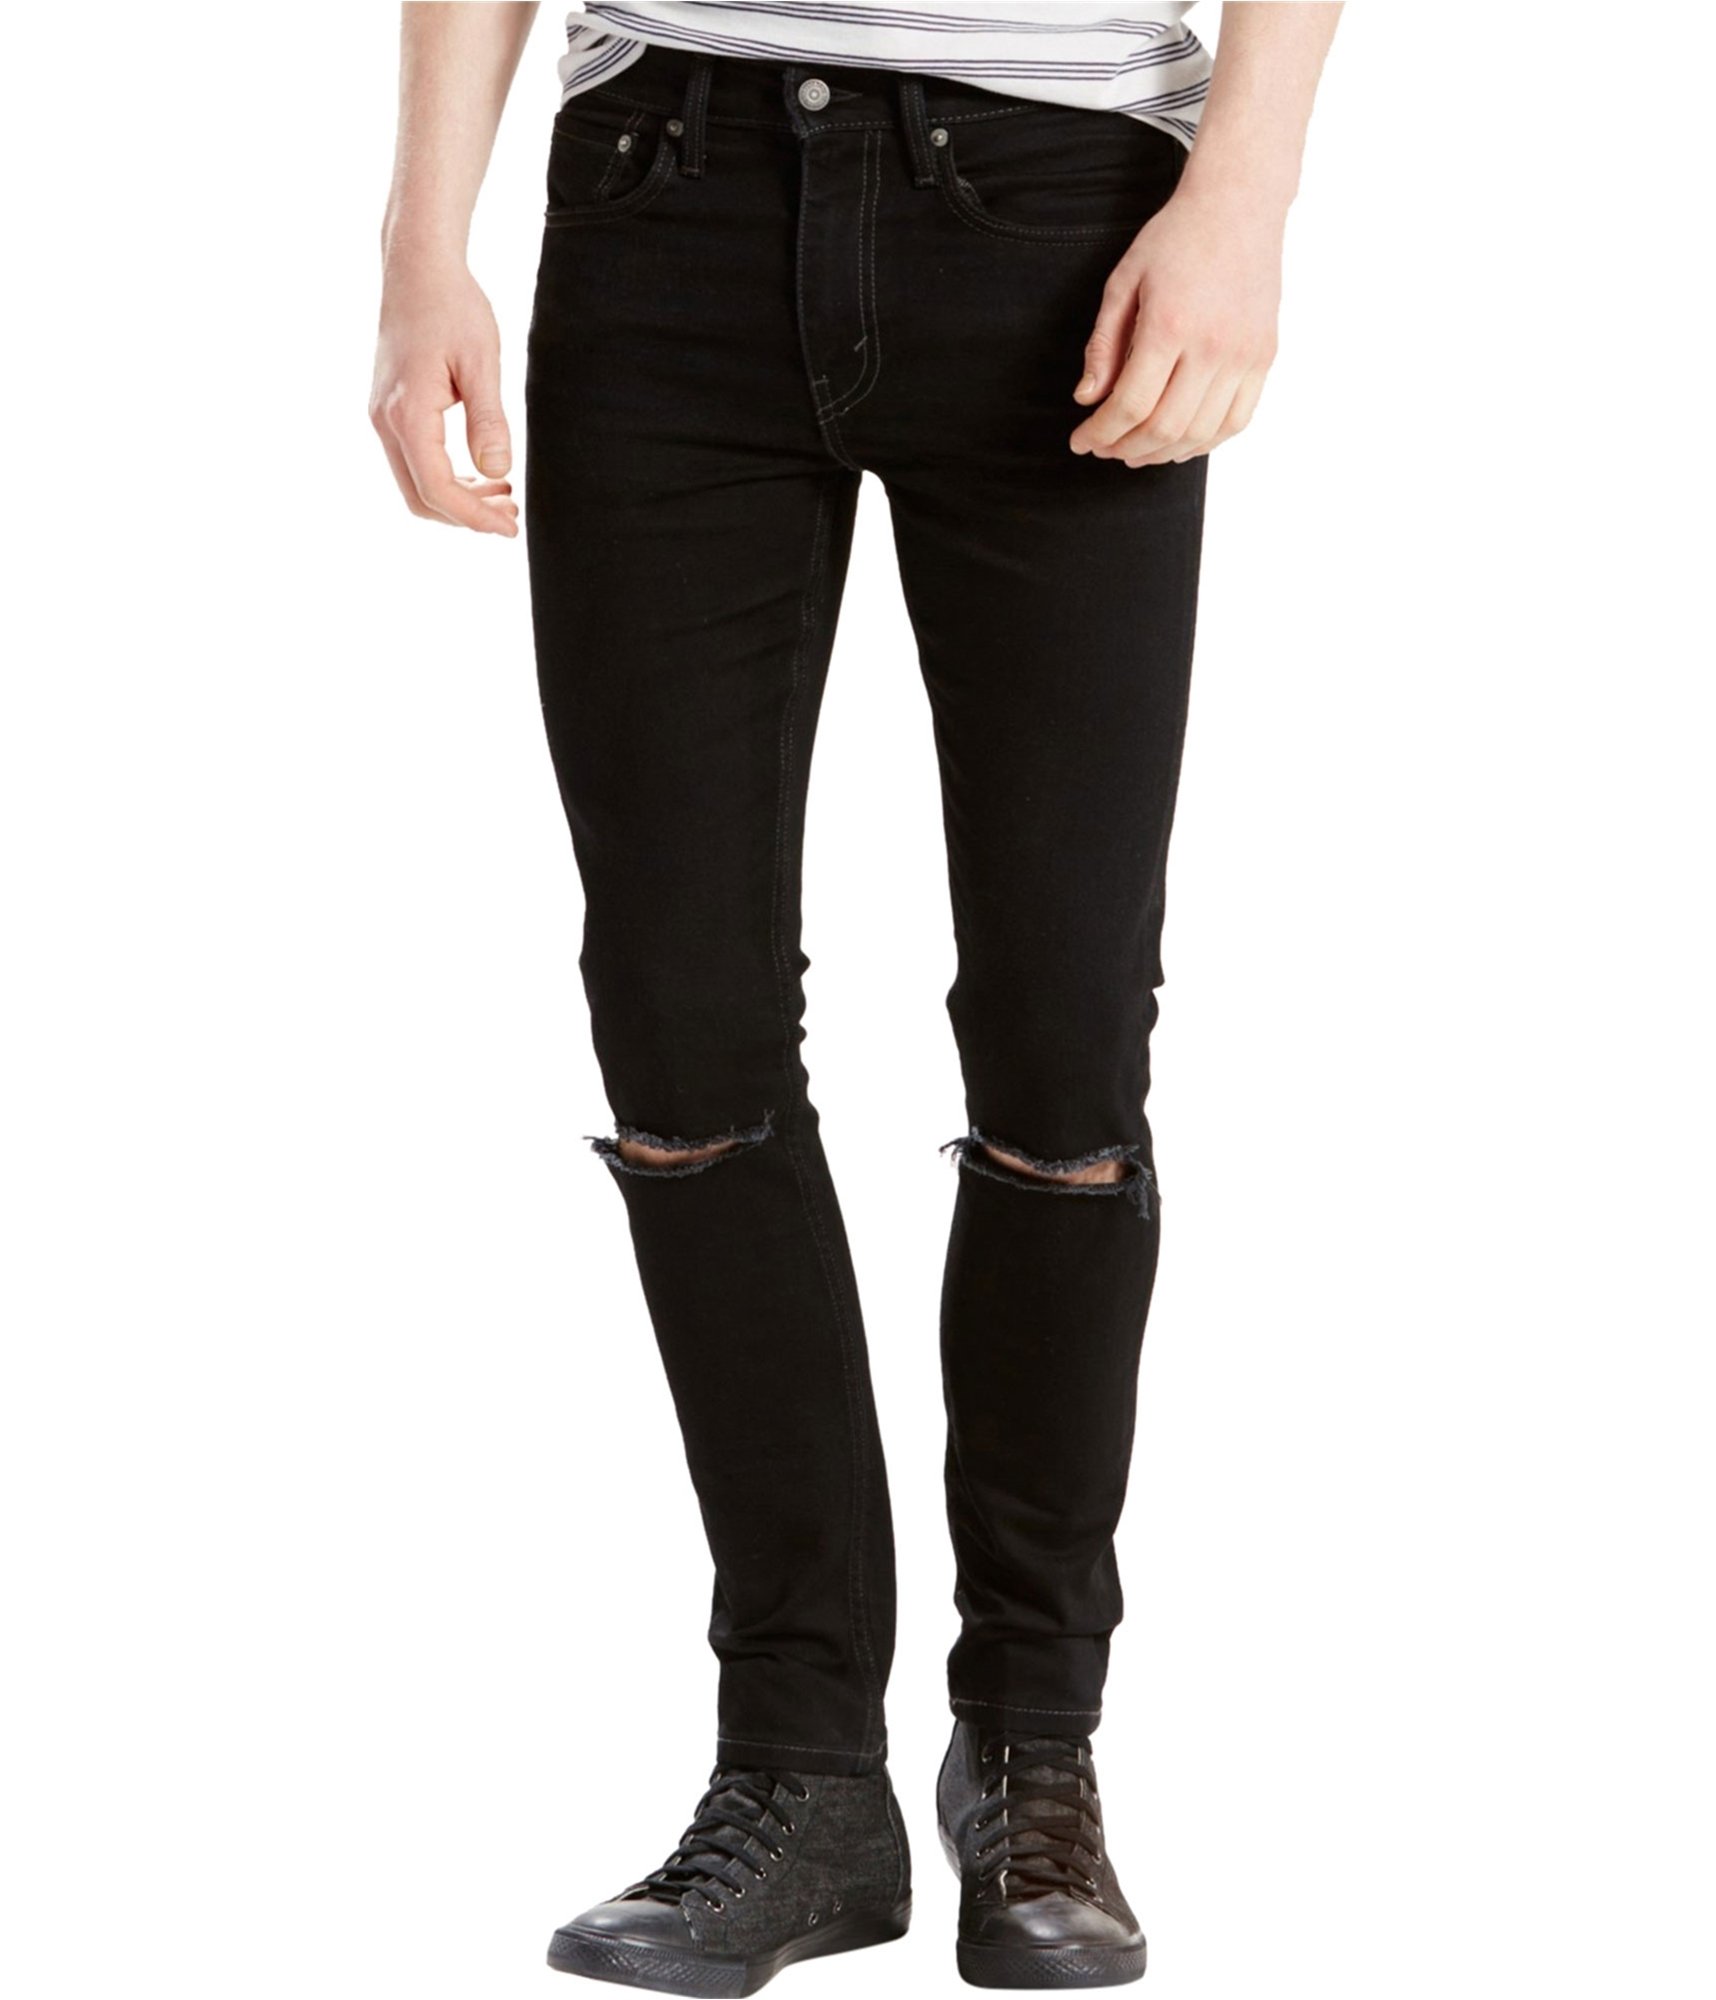 Betjening mulig helt seriøst Lil Buy a Mens Levi's Extreme Skinny Fit Jeans Online | TagsWeekly.com